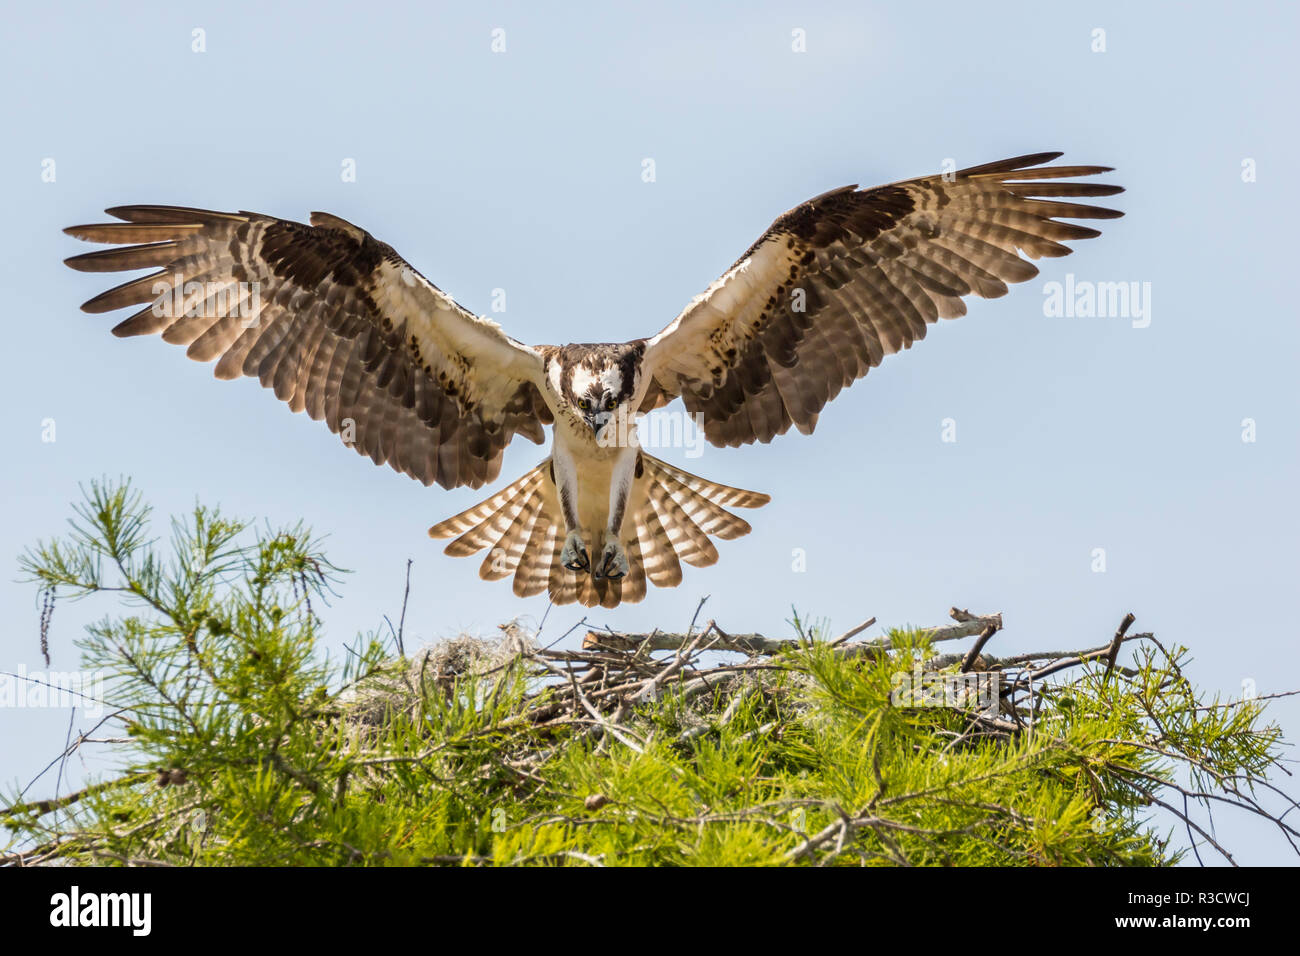 Stati Uniti d'America, Louisiana, Atchafalaya patrimonio nazionale di zona. Osprey atterraggio sul nido. Foto Stock